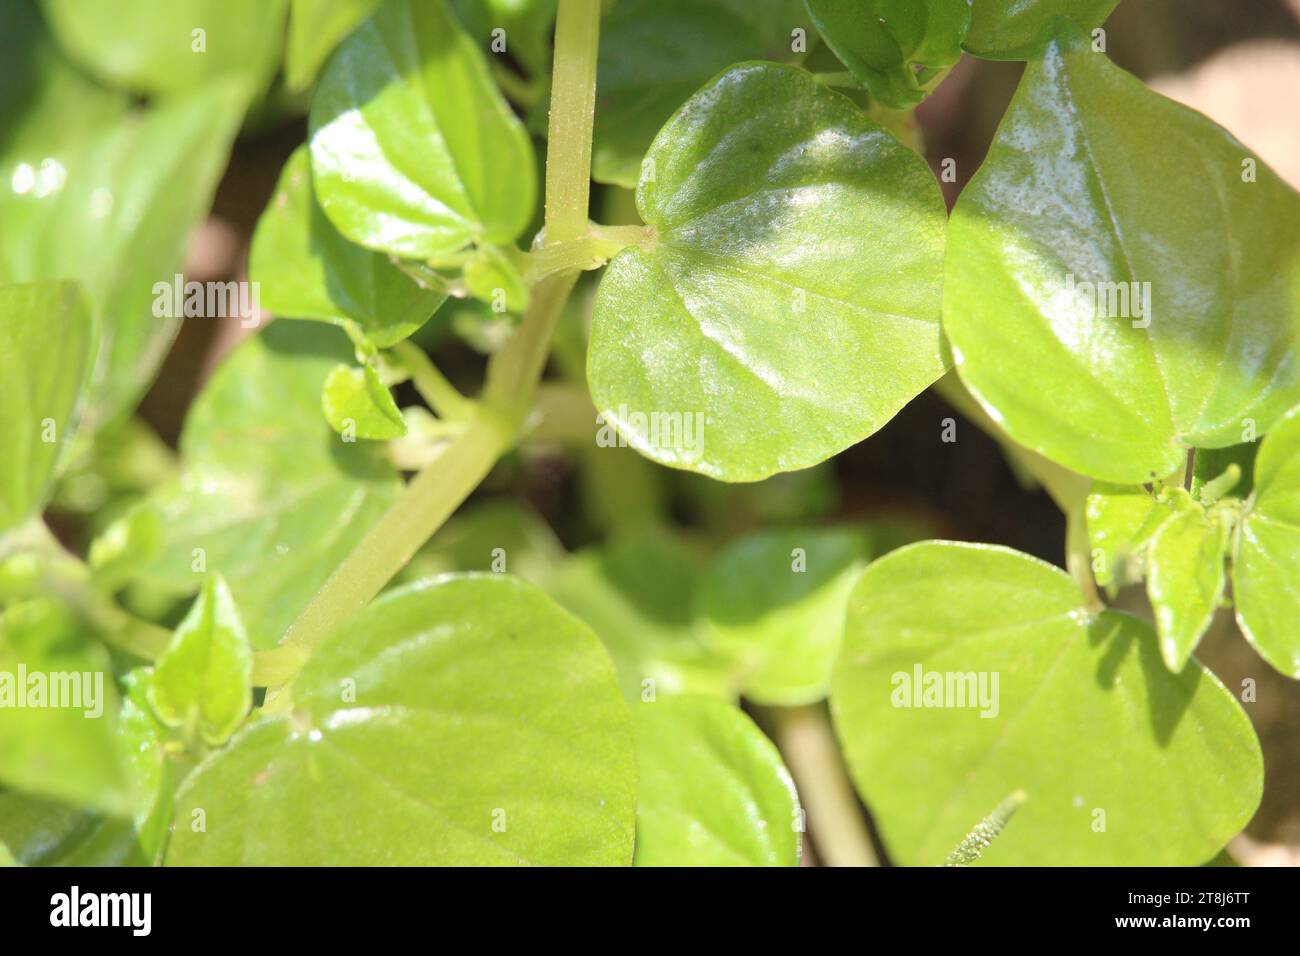 Chinesische Betelblätter oder Peperomia pellucida Blätter haben Krebs- und entzündungshemmende Mittel, die gut für die Gesundheit sind Stockfoto